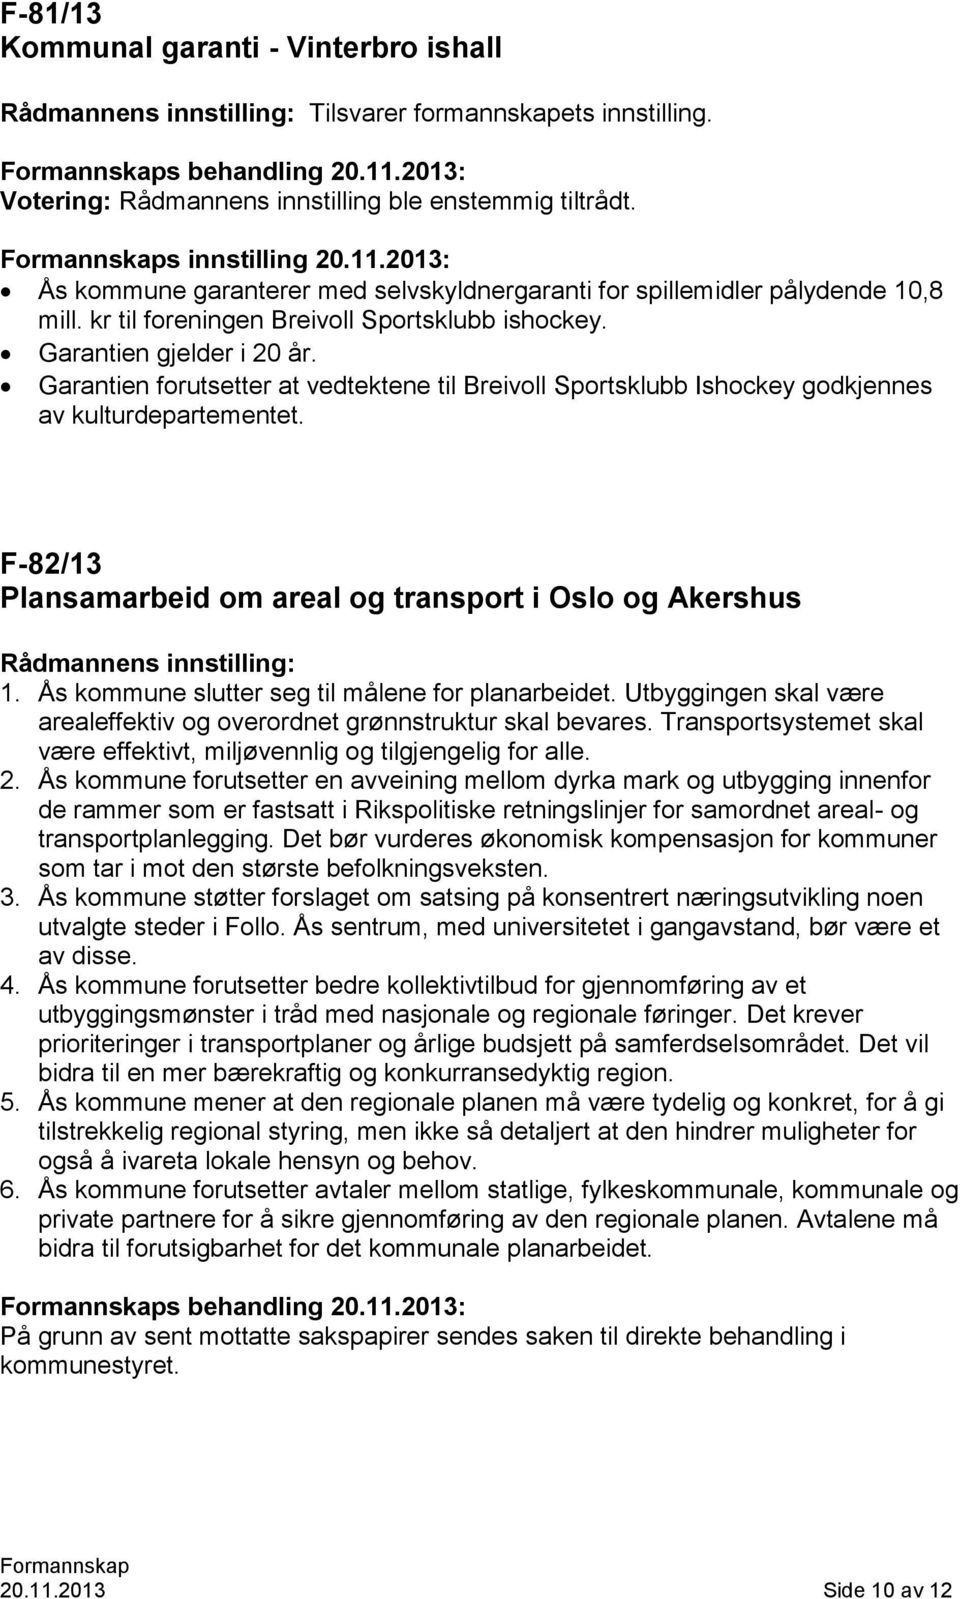 Garantien forutsetter at vedtektene til Breivoll Sportsklubb Ishockey godkjennes av kulturdepartementet. F-82/13 Plansamarbeid om areal og transport i Oslo og Akershus Rådmannens innstilling: 1.